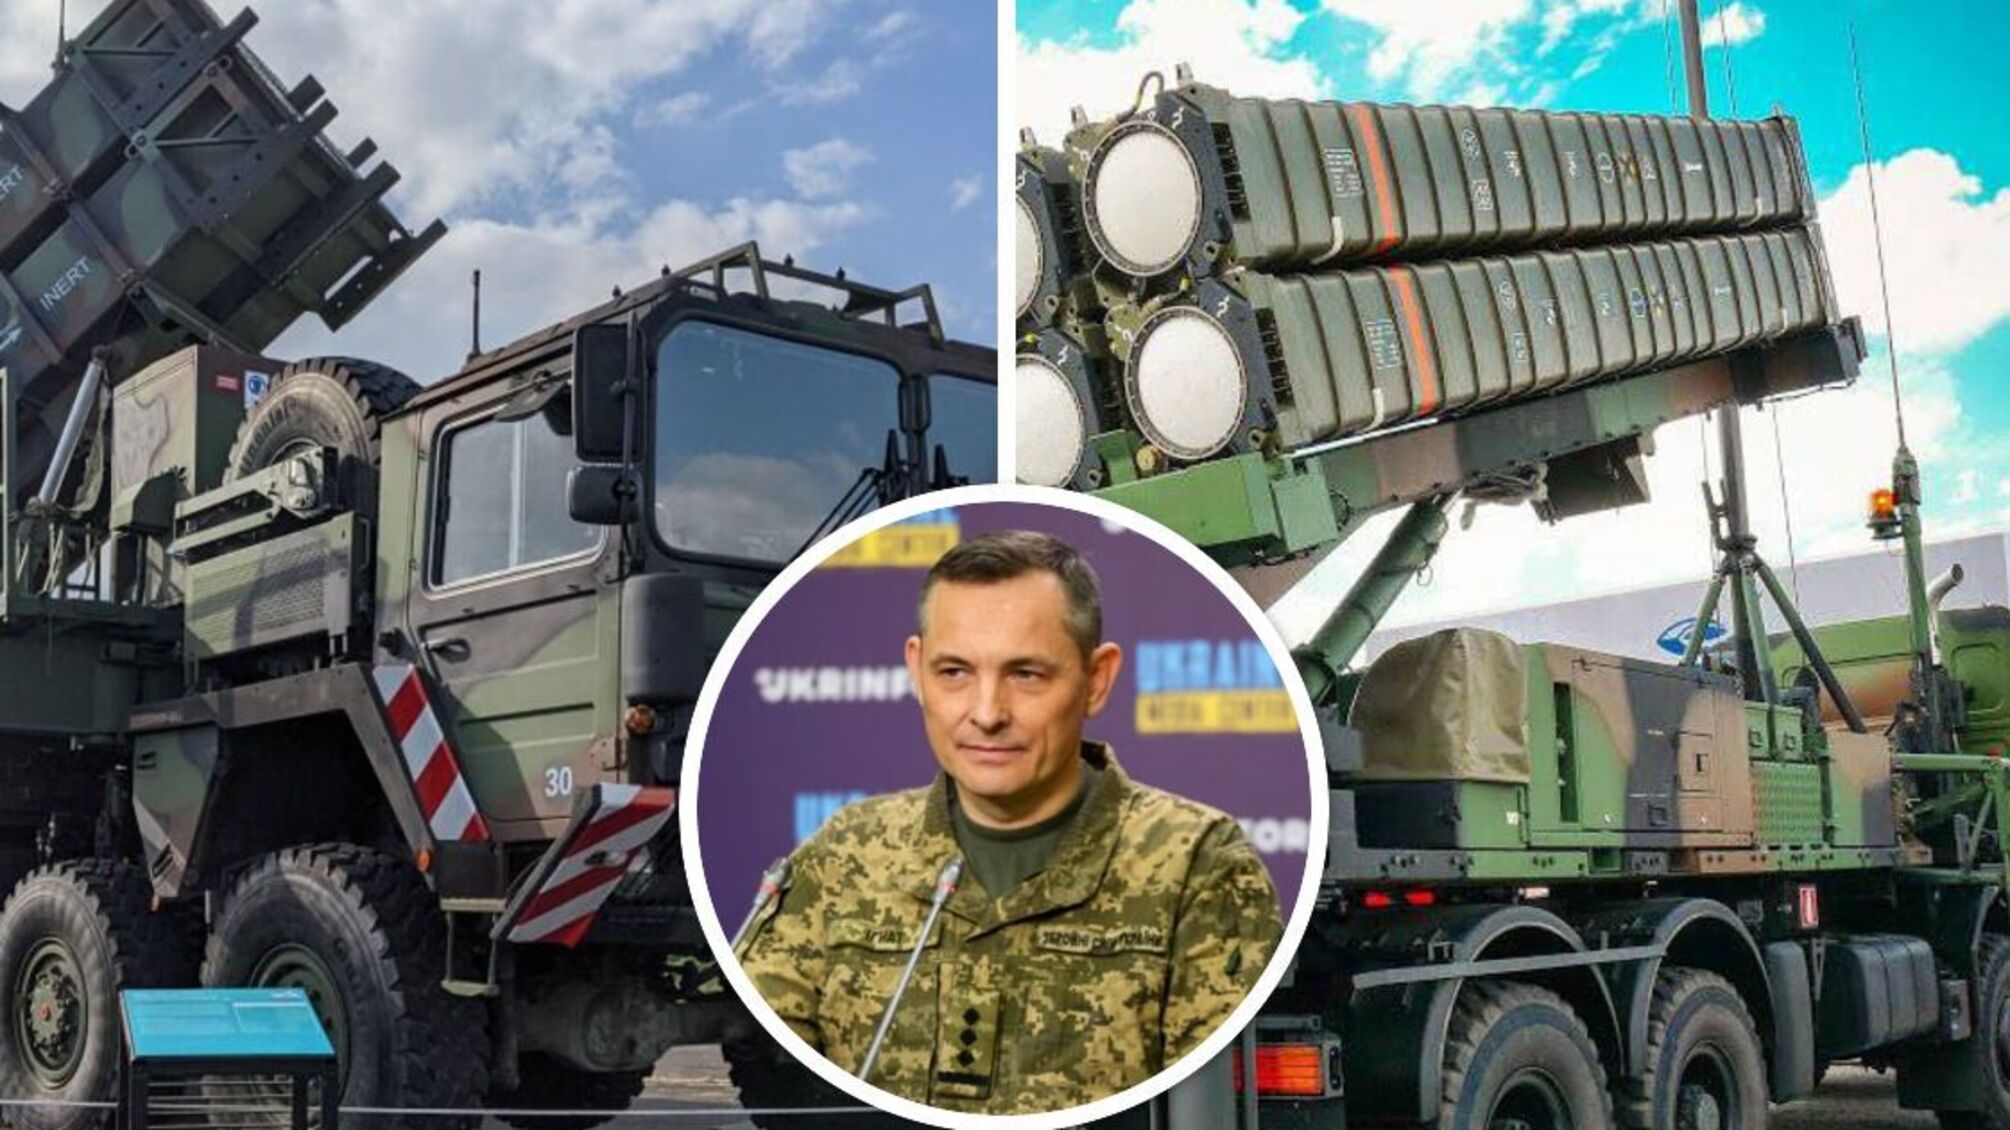 ЗРК Patriot и Samp/T – детали поставок от спикера Воздушных сил ВСУ Юрия Игната